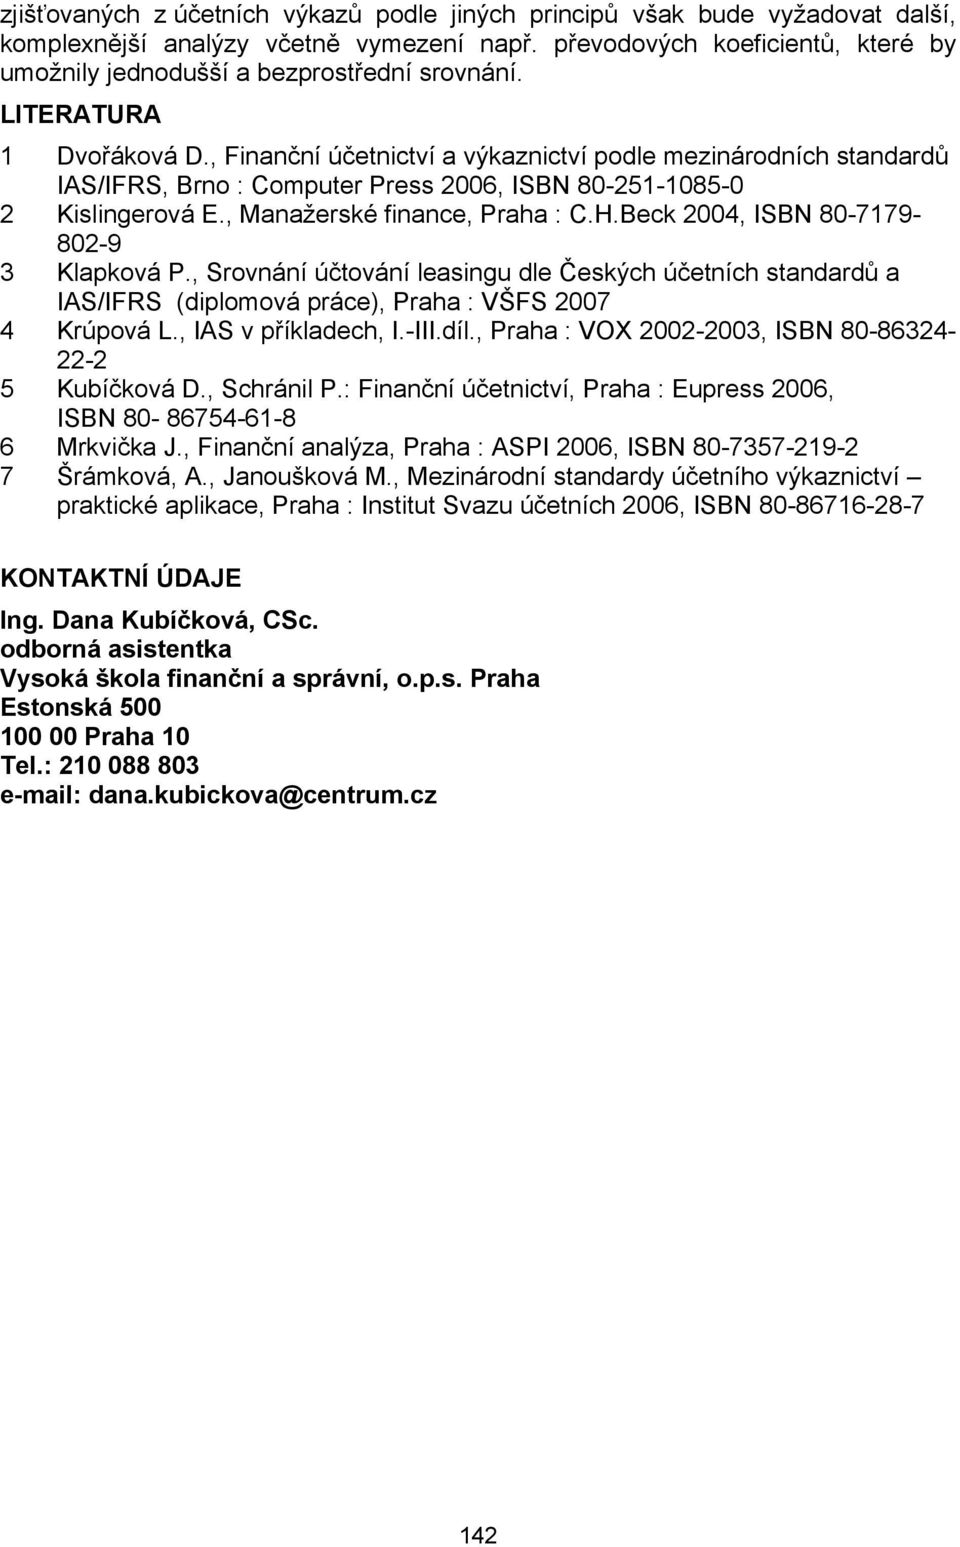 , Finanční účetnictví a výkaznictví podle mezinárodních standardů IAS/IFRS, Brno : Computer Press 2006, ISBN 80-251-1085-0 2 Kislingerová E., Manažerské finance, Praha : C.H.